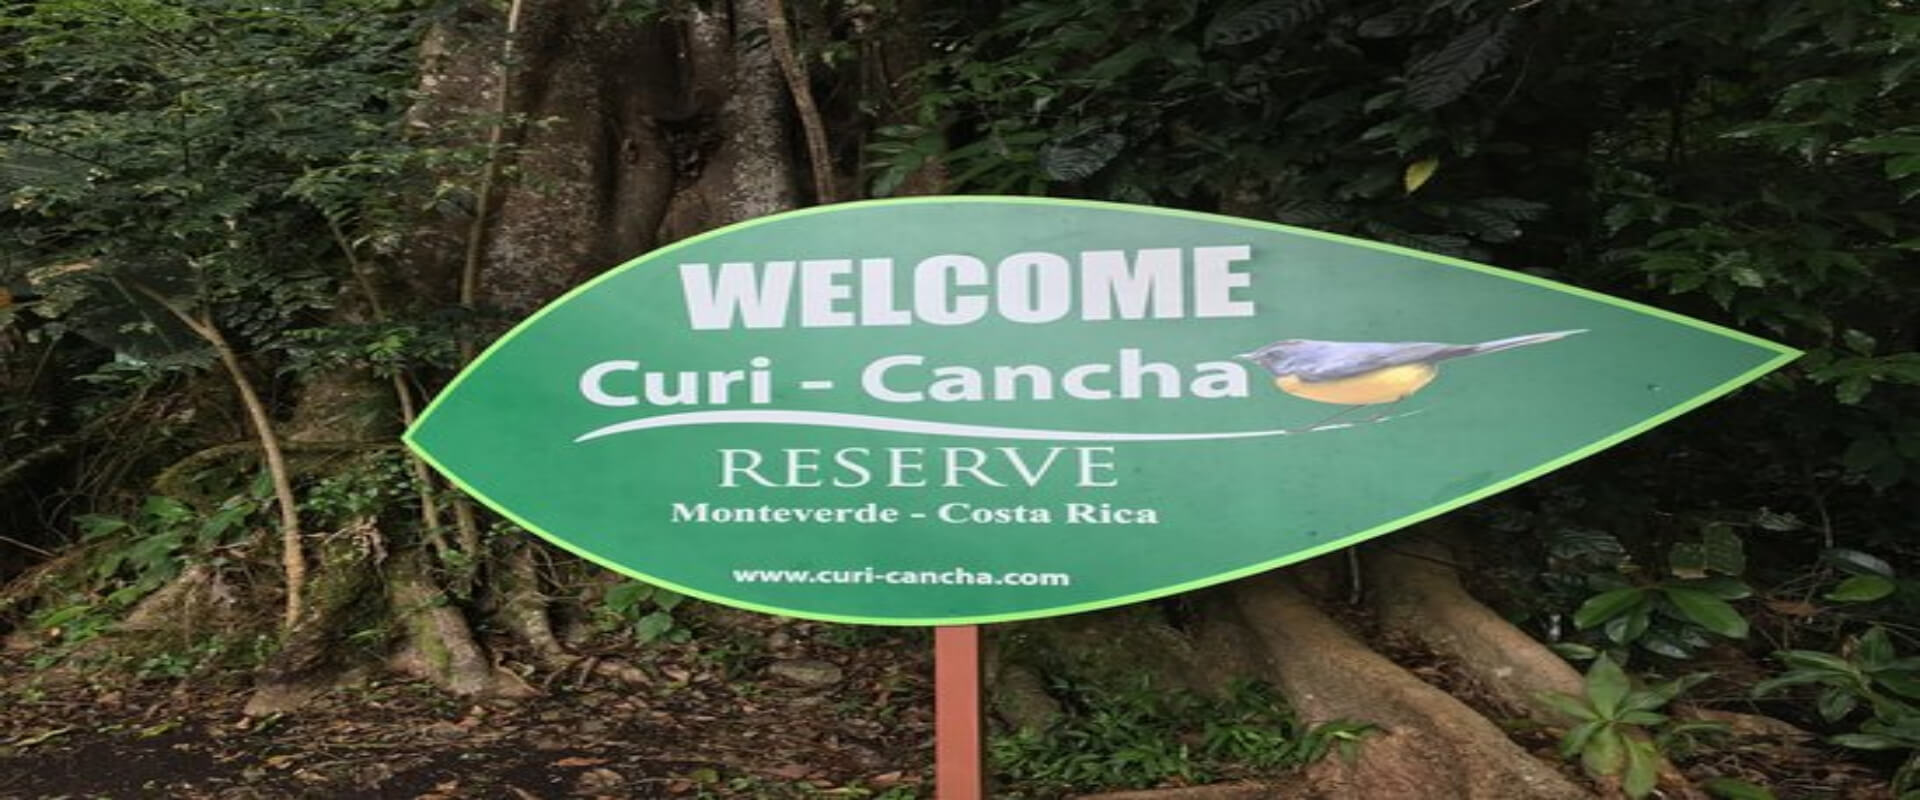 Curi-Cancha Nature Tour | Costa Rica Jade Tours